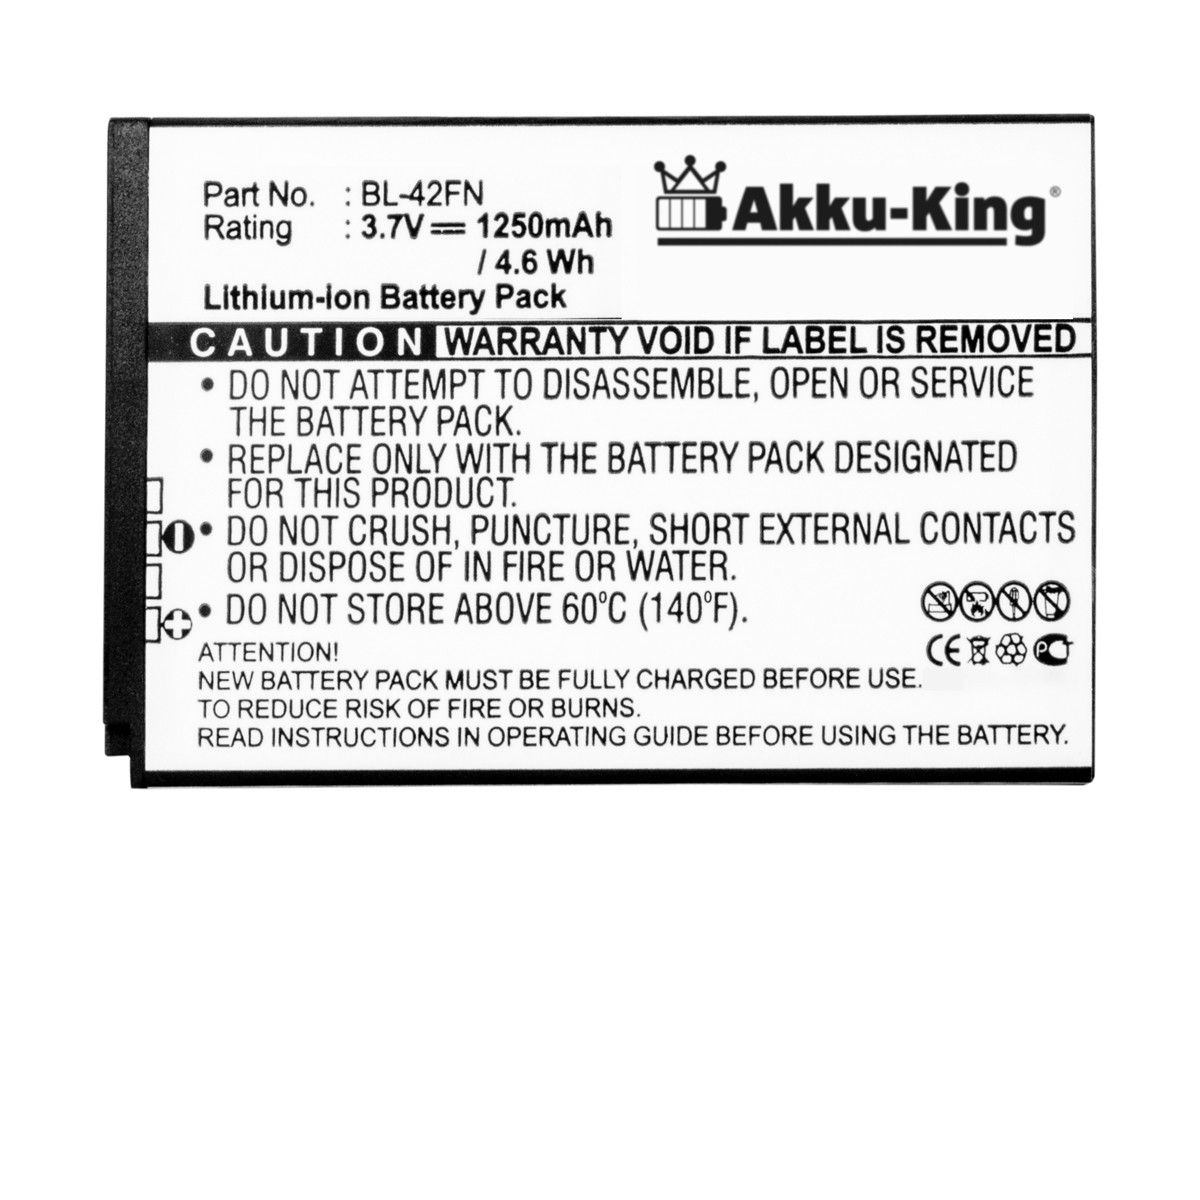 AKKU-KING Akku kompatibel mit Volt, Handy-Akku, 1250mAh LG 3.7 BL-42FN Li-Ion